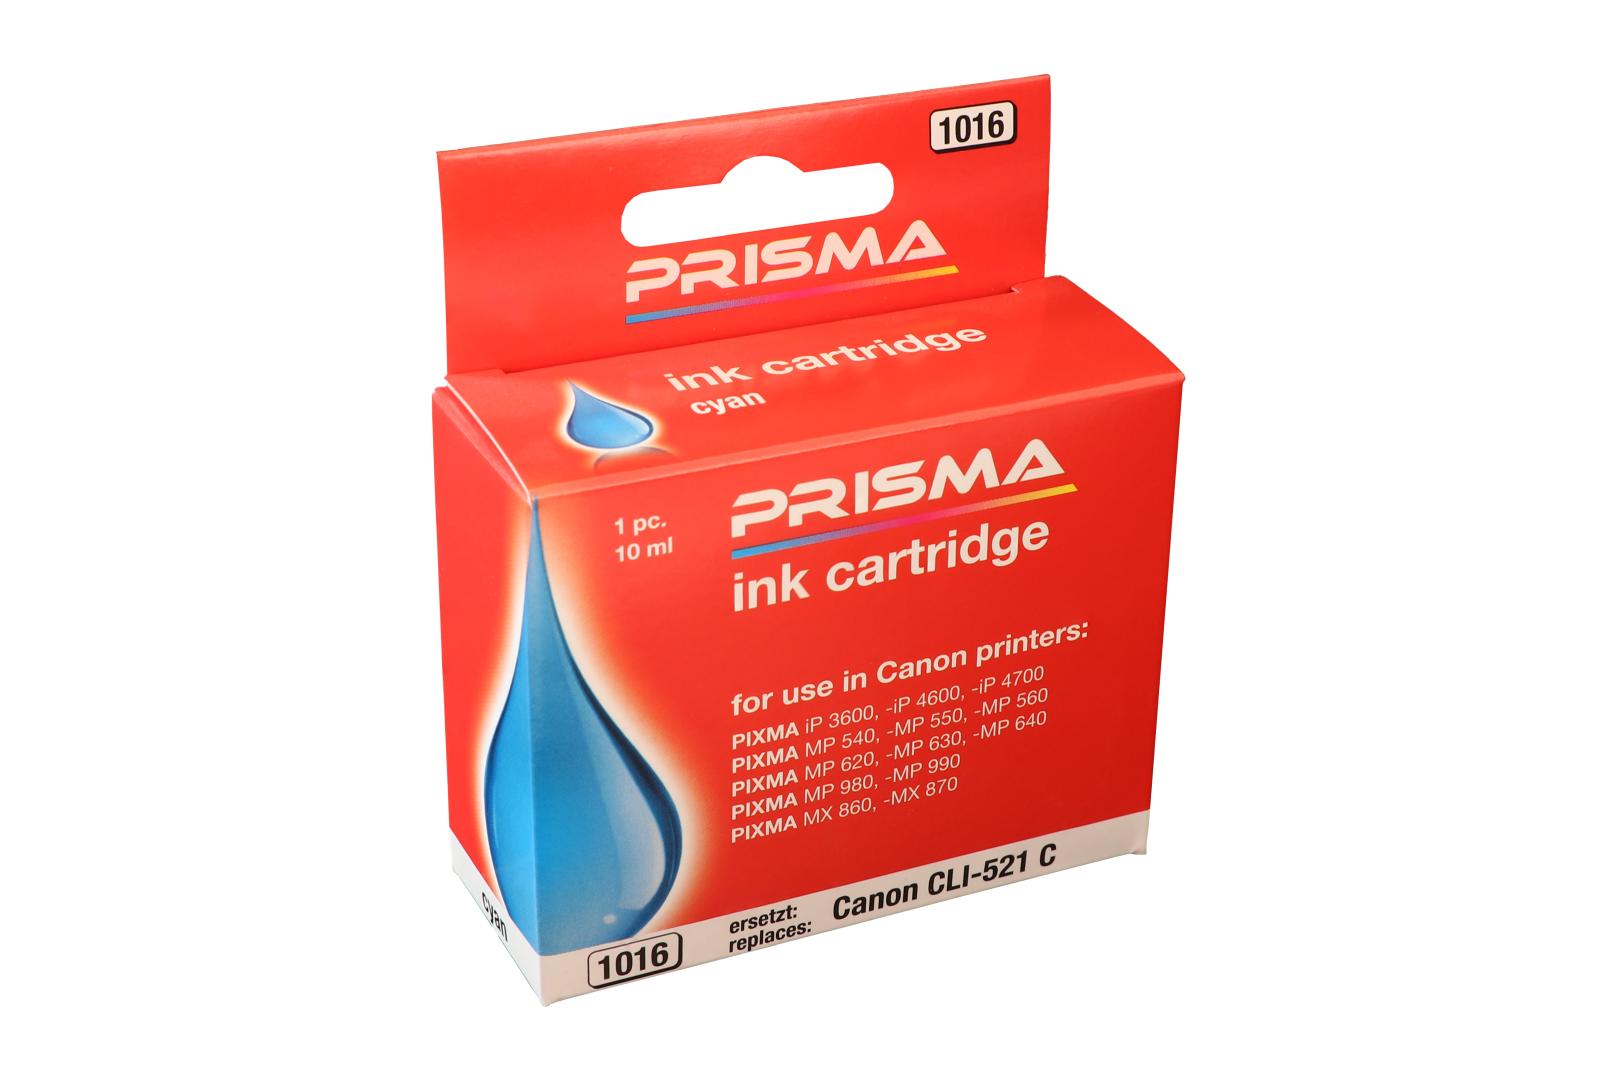 PRISMA 1016 Druckerpatrone für Canon Tintenstrahldrucker, cyan, 10 ml